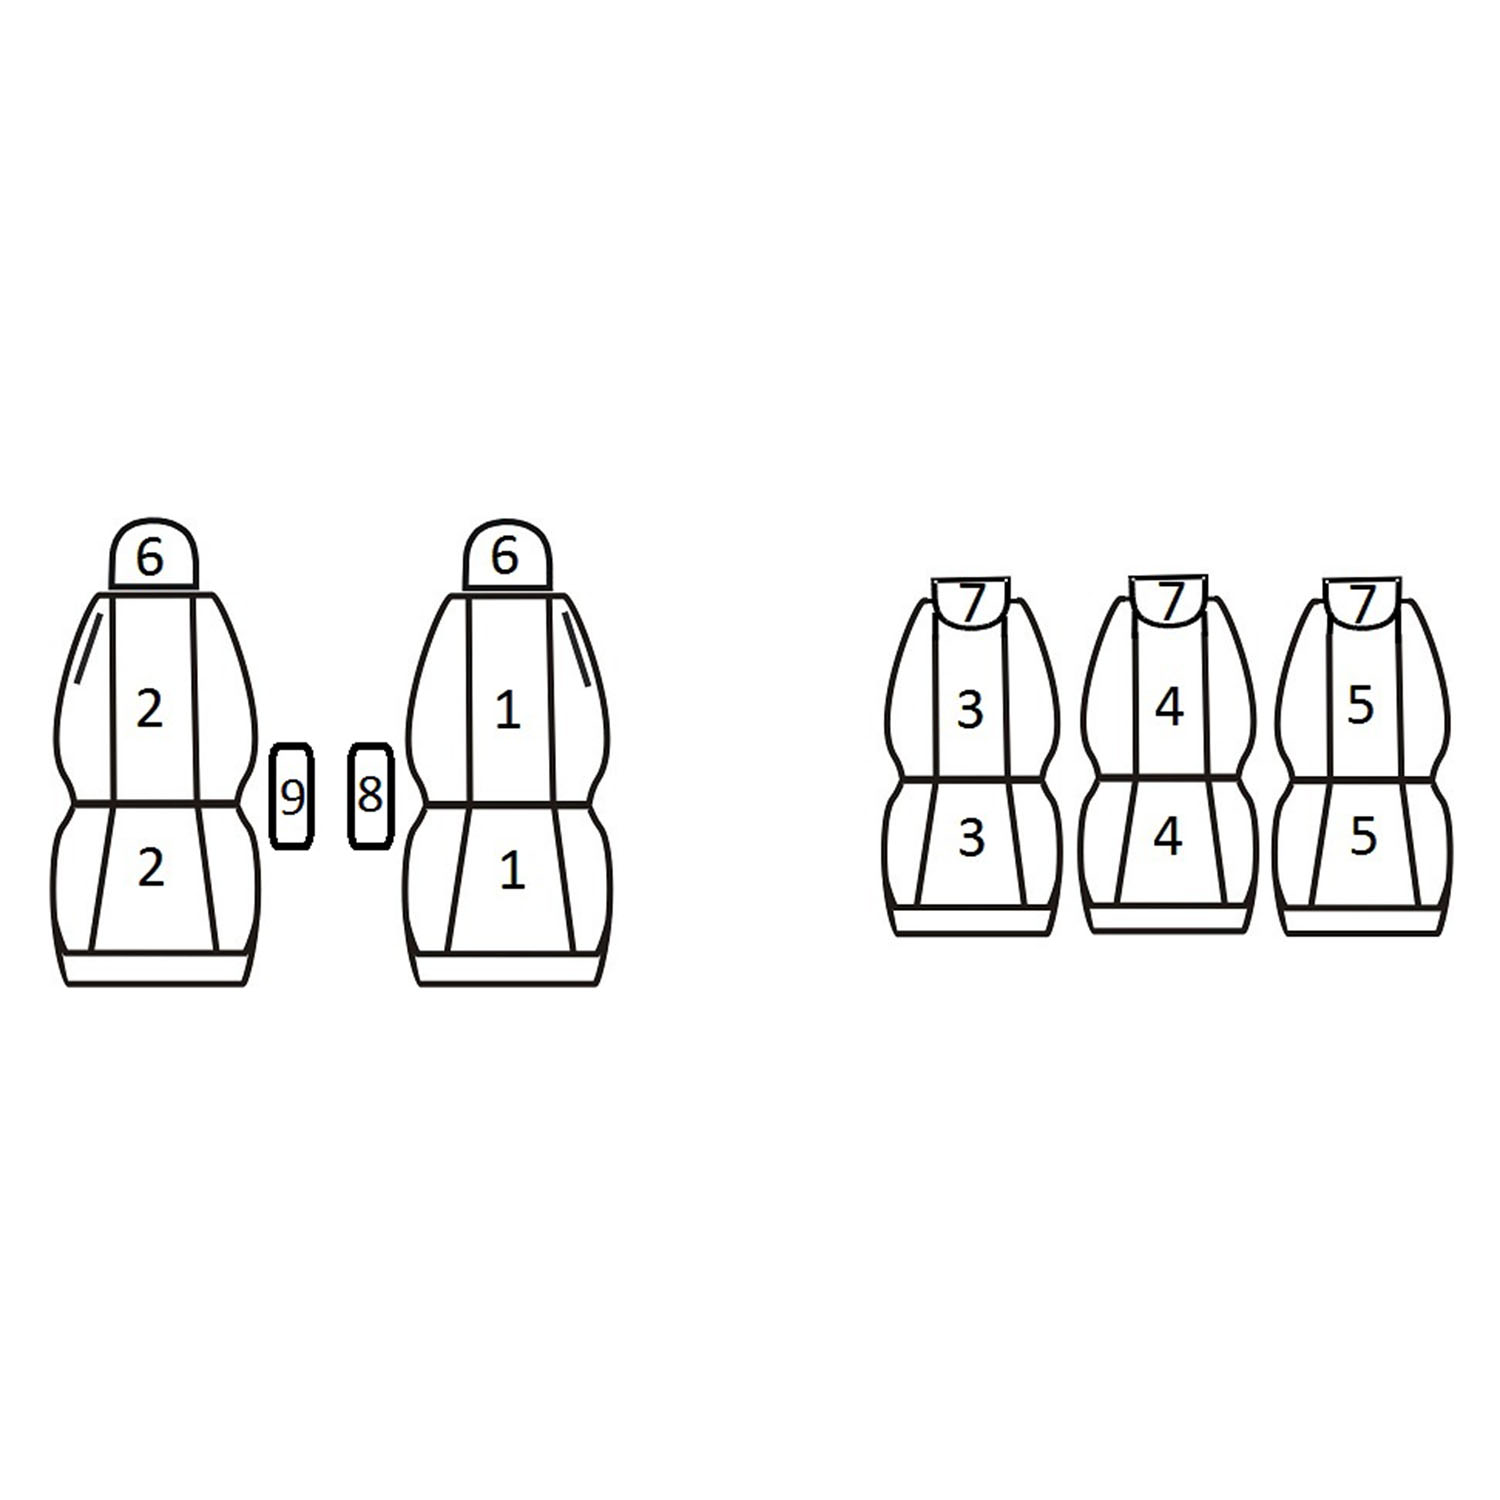 Citroen C4 Picasso  (5 foteli) zakres rocznikowy 2006 - 2013